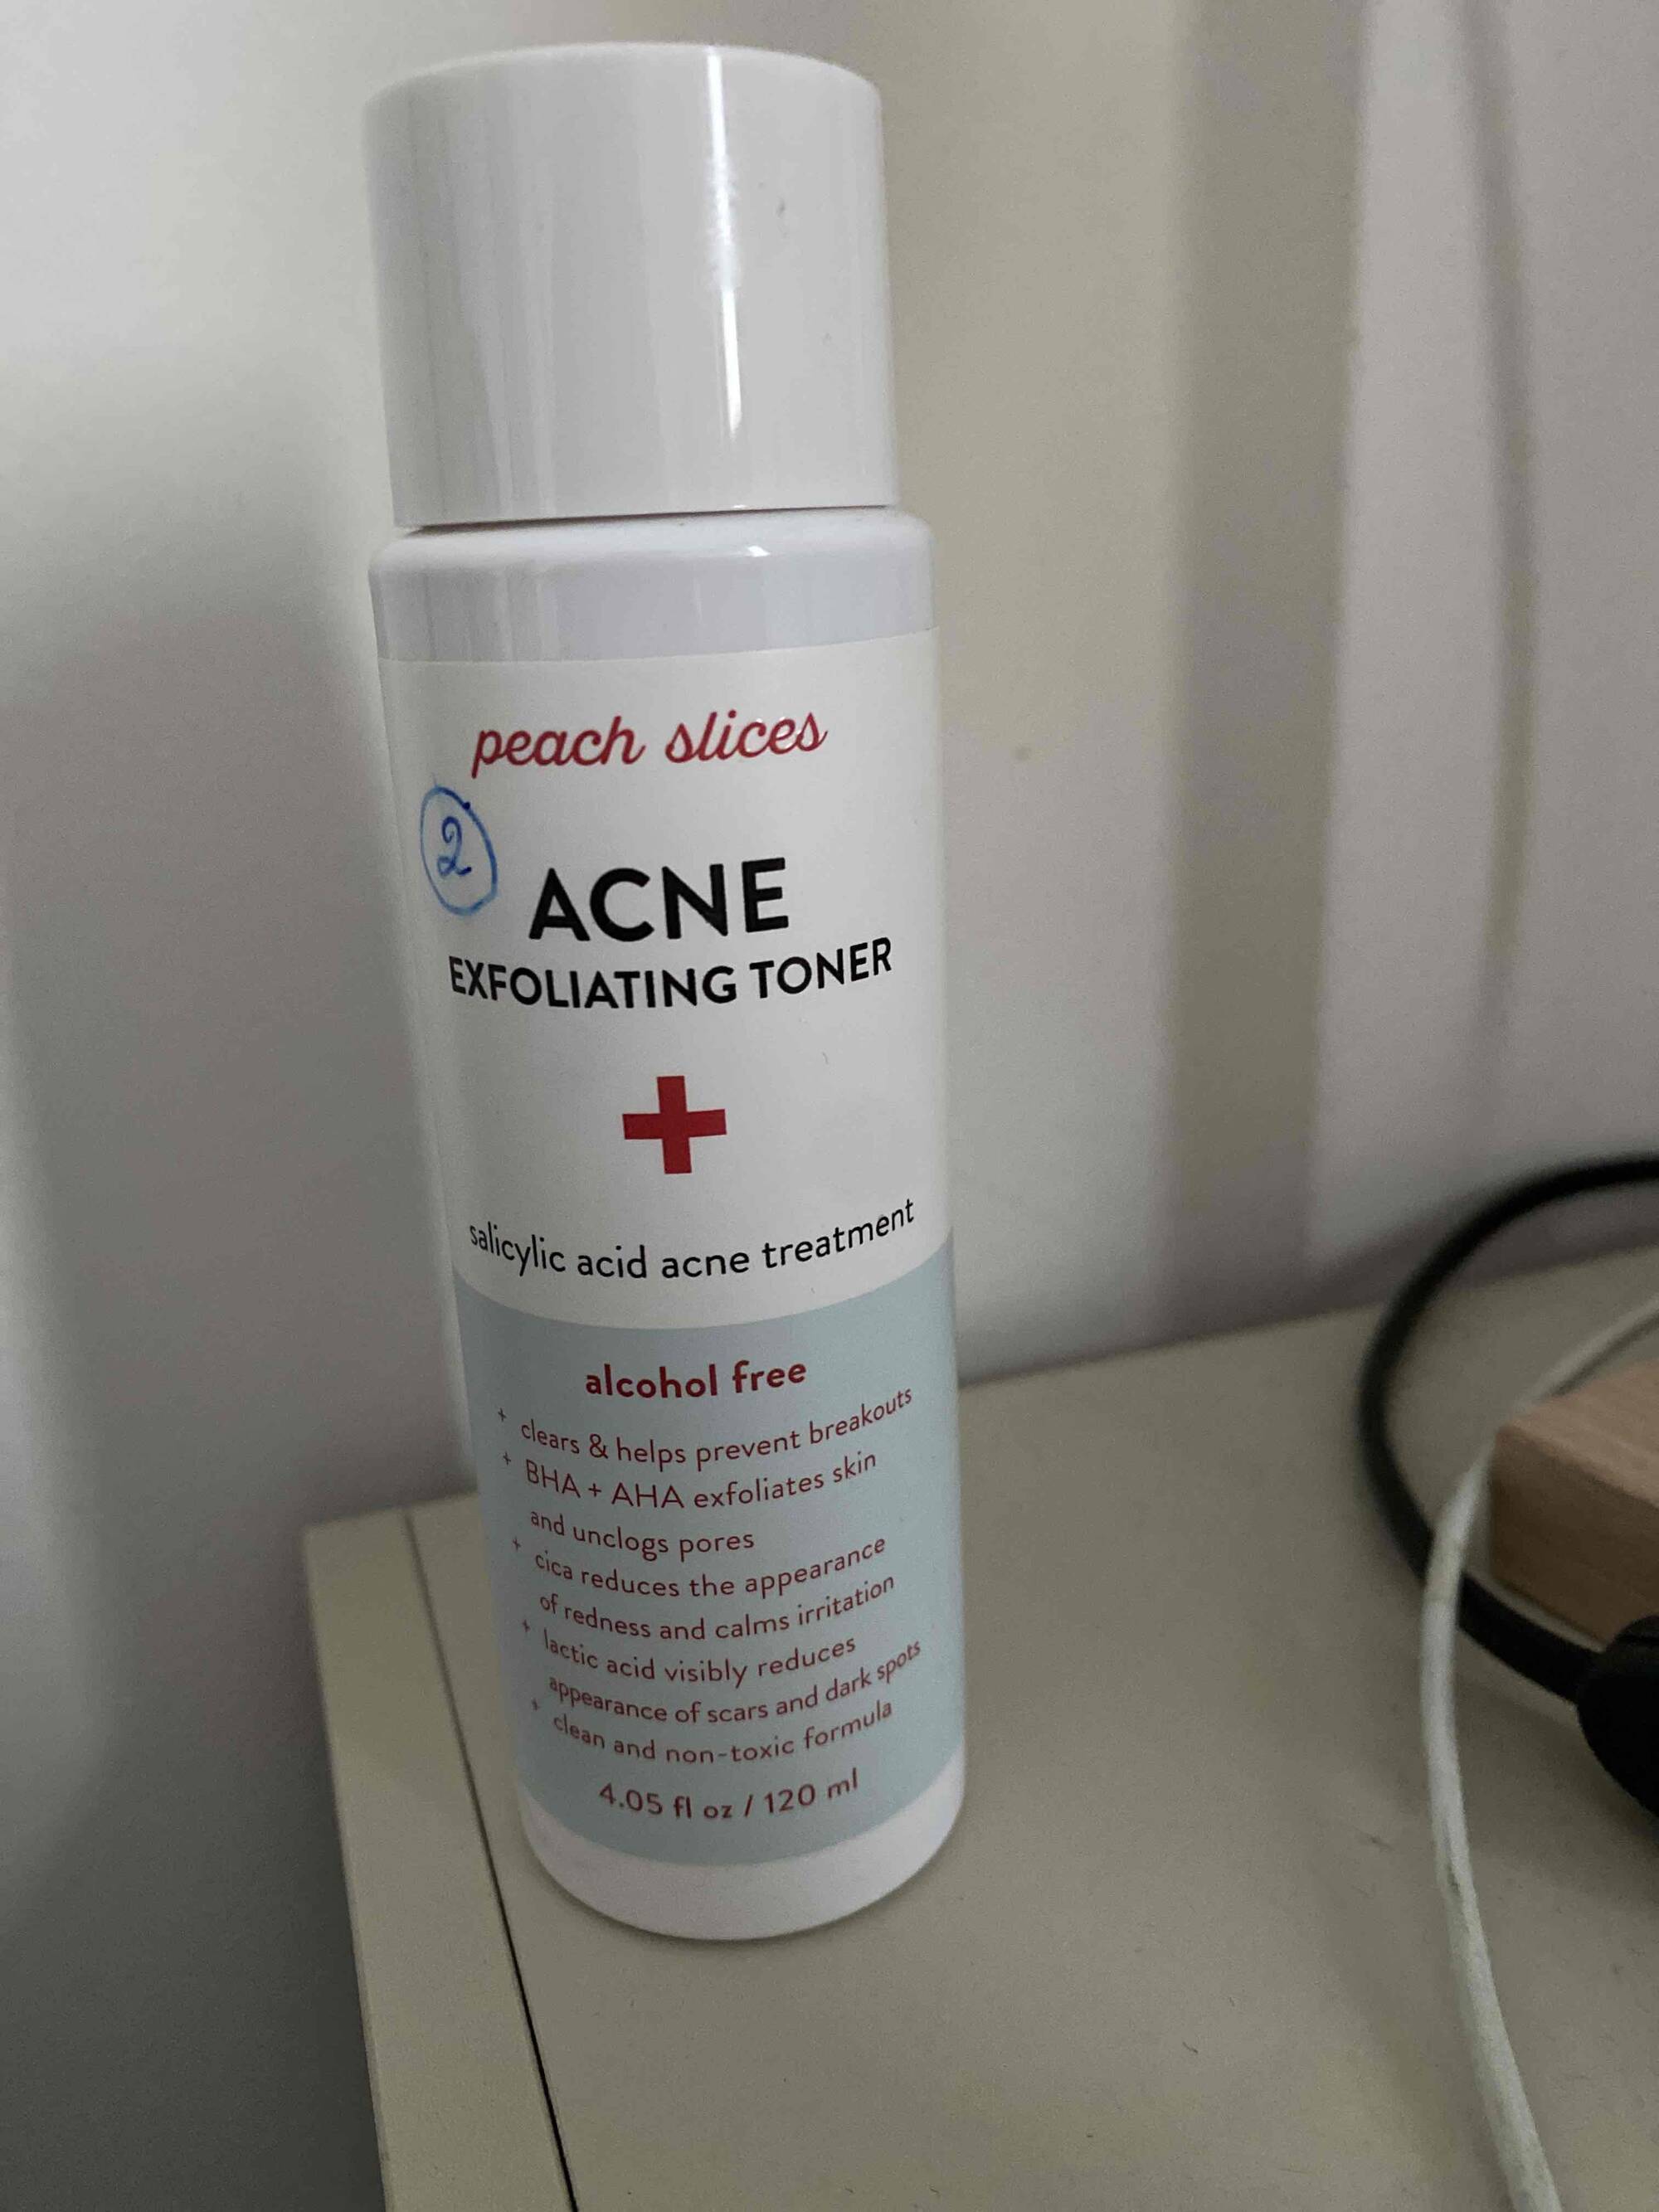 PEACH SLICES - Acne exfoliating toner